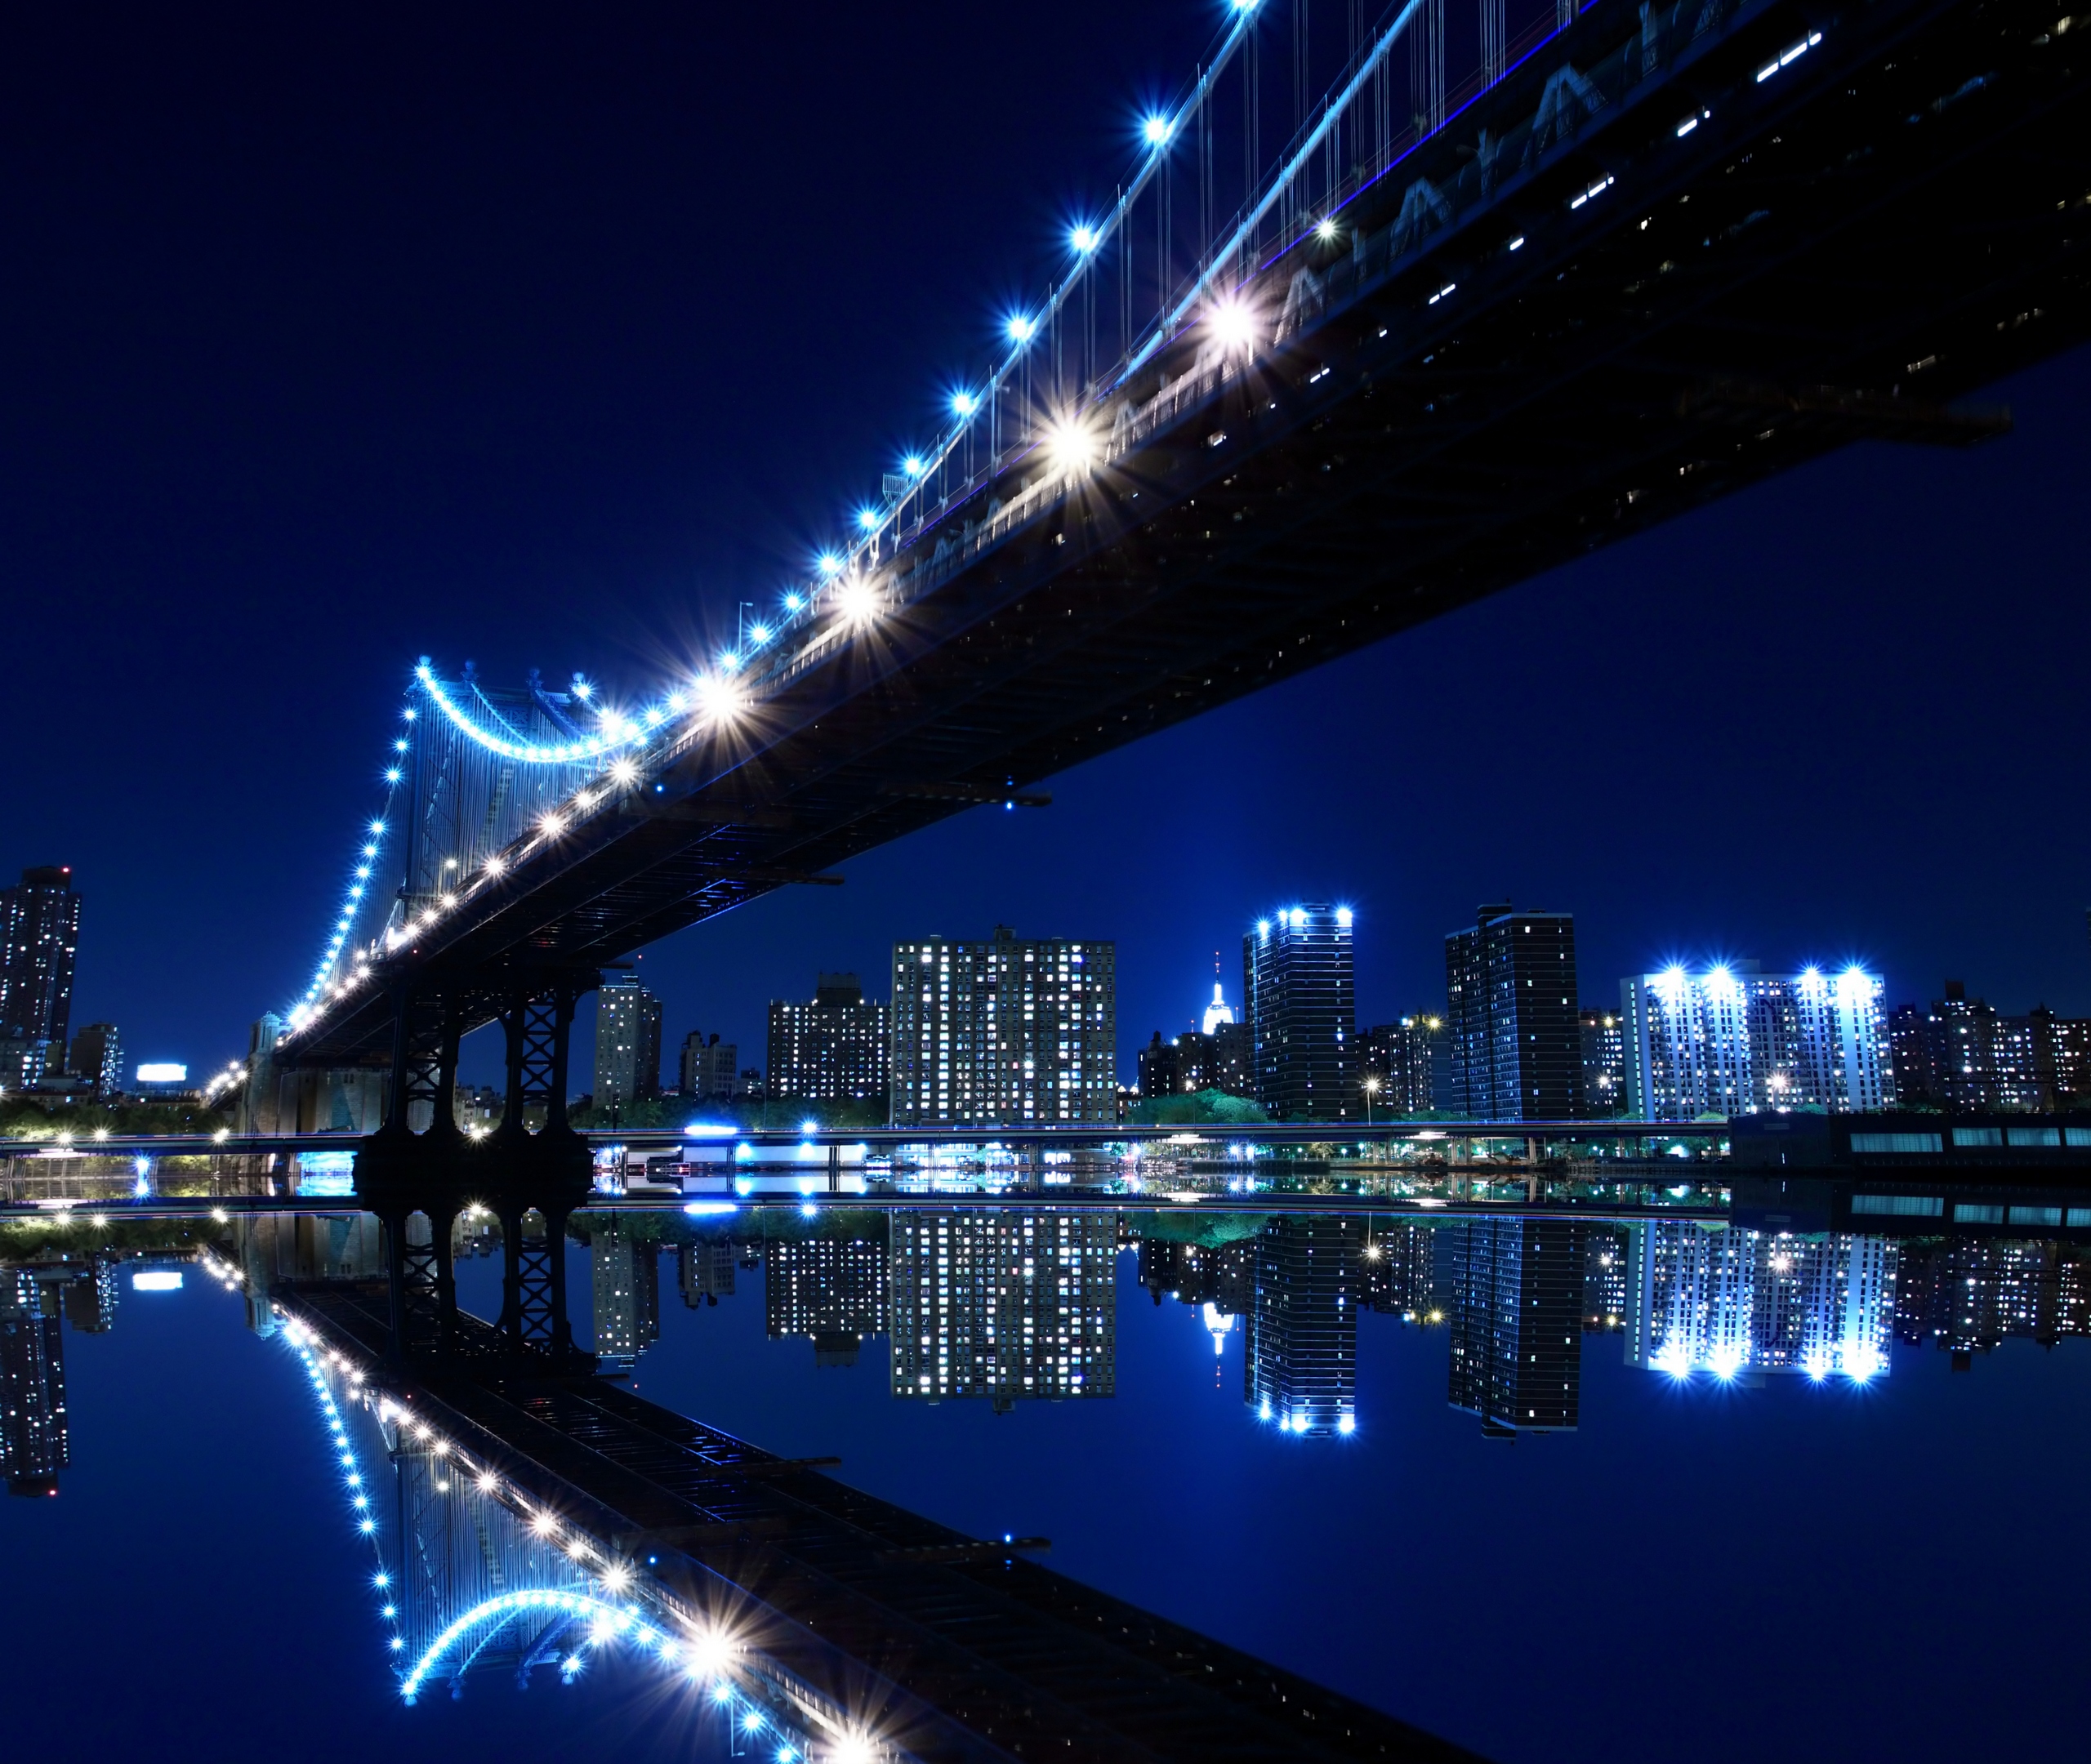 Скачать обои Манхэттенский Мост на телефон бесплатно